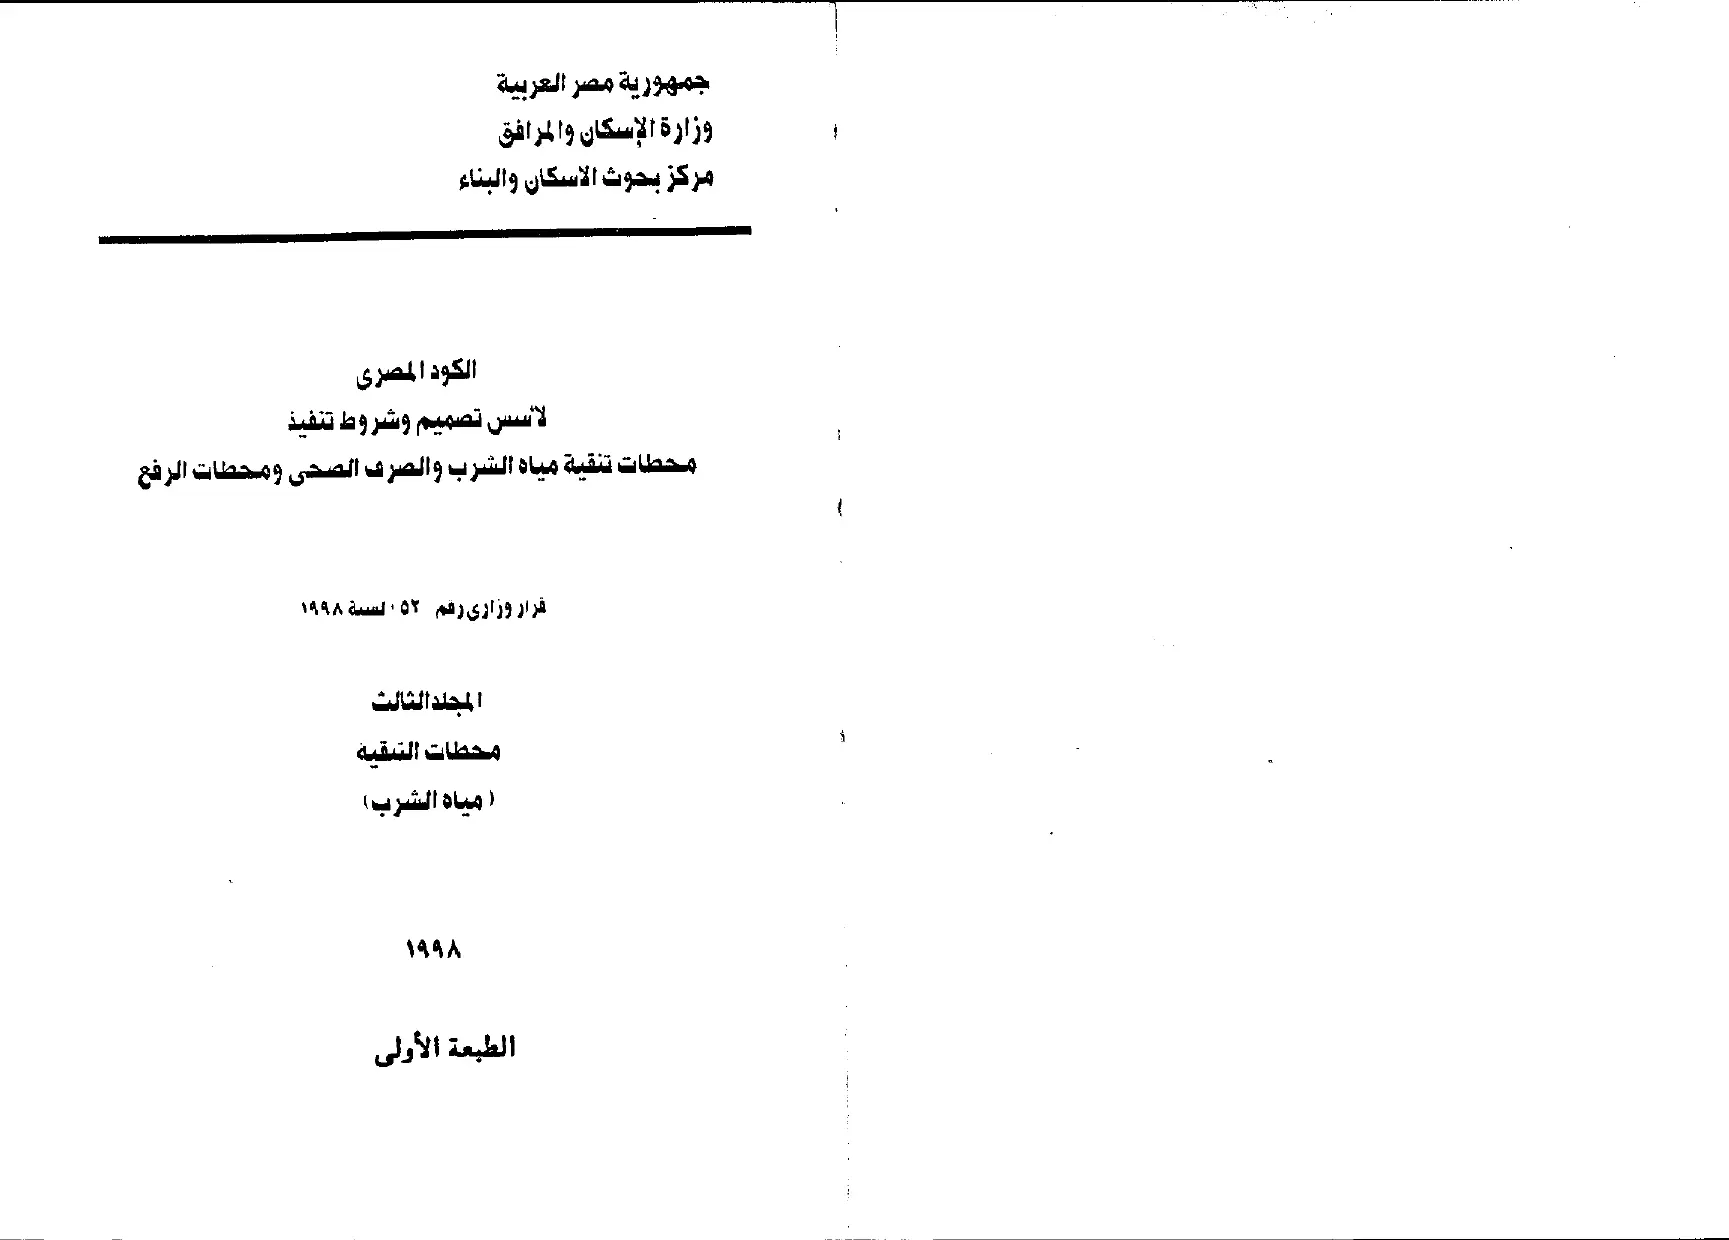 الكود المصري المجلد الثالث (محطات التنقية – مياه الشرب)1998